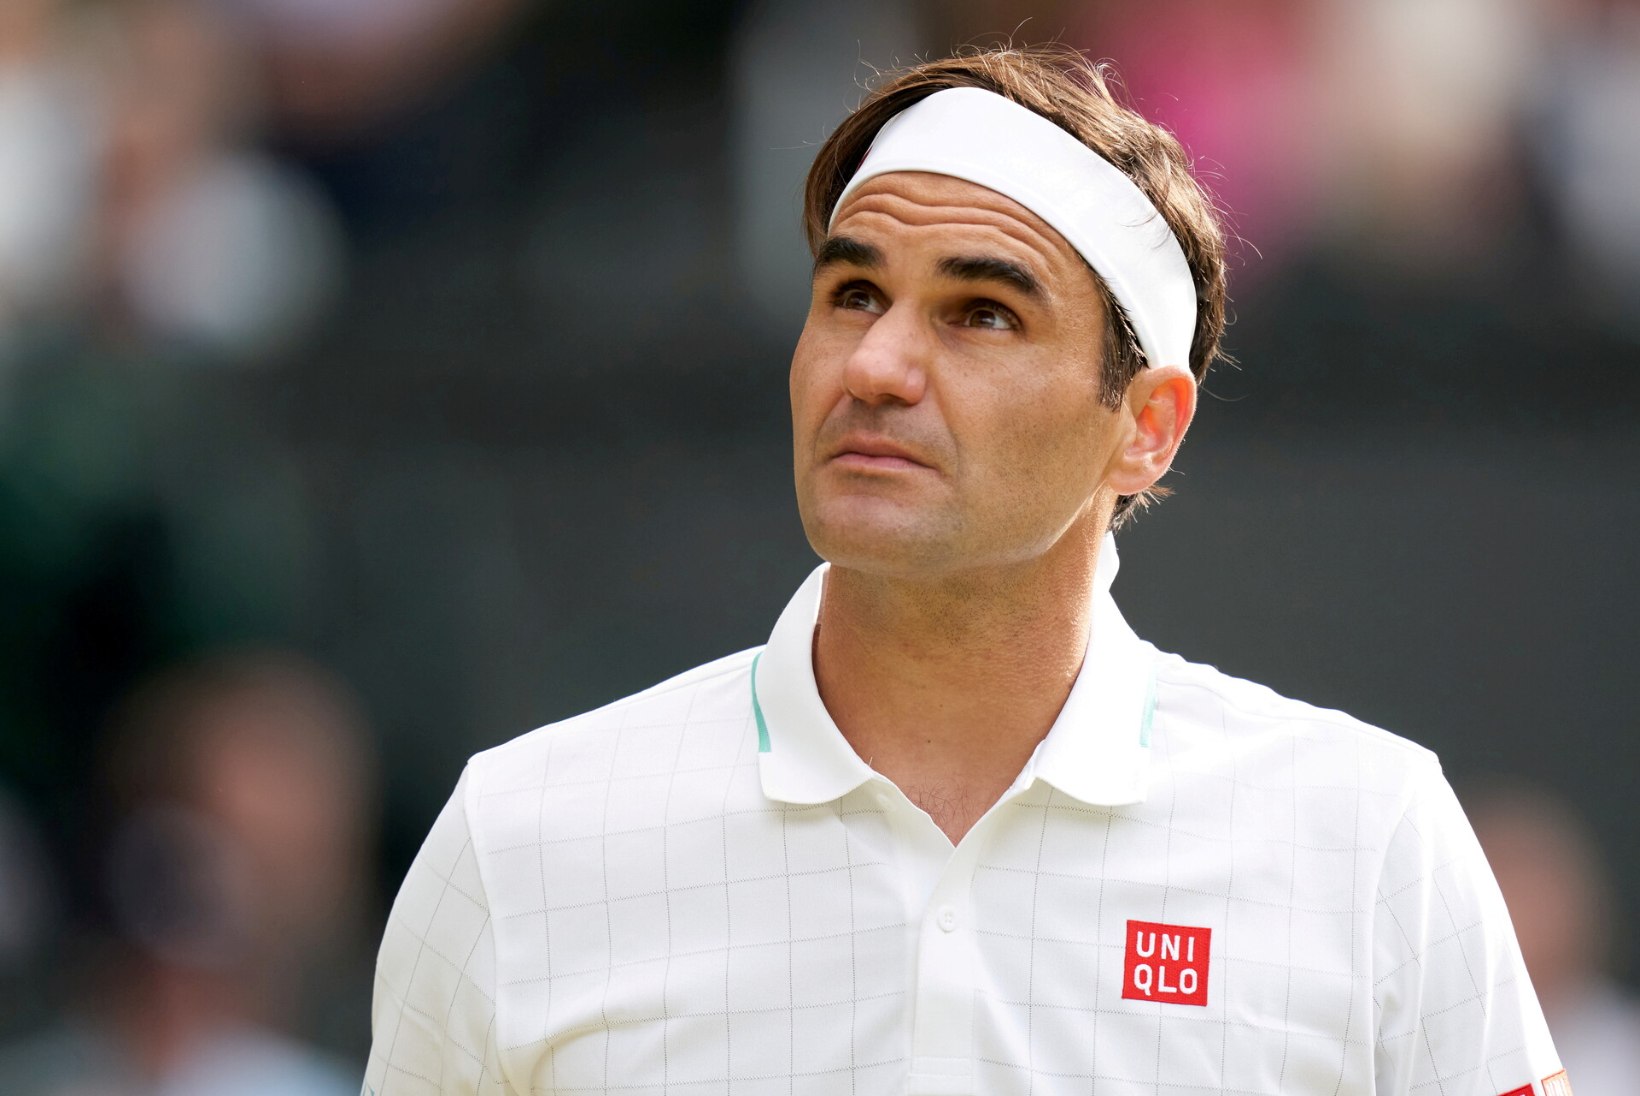 Federer jätab Austraalia lahtised vahele, kuid karjääri veel ei lõpeta: „Tahan näha, milleks võimeline olen.“